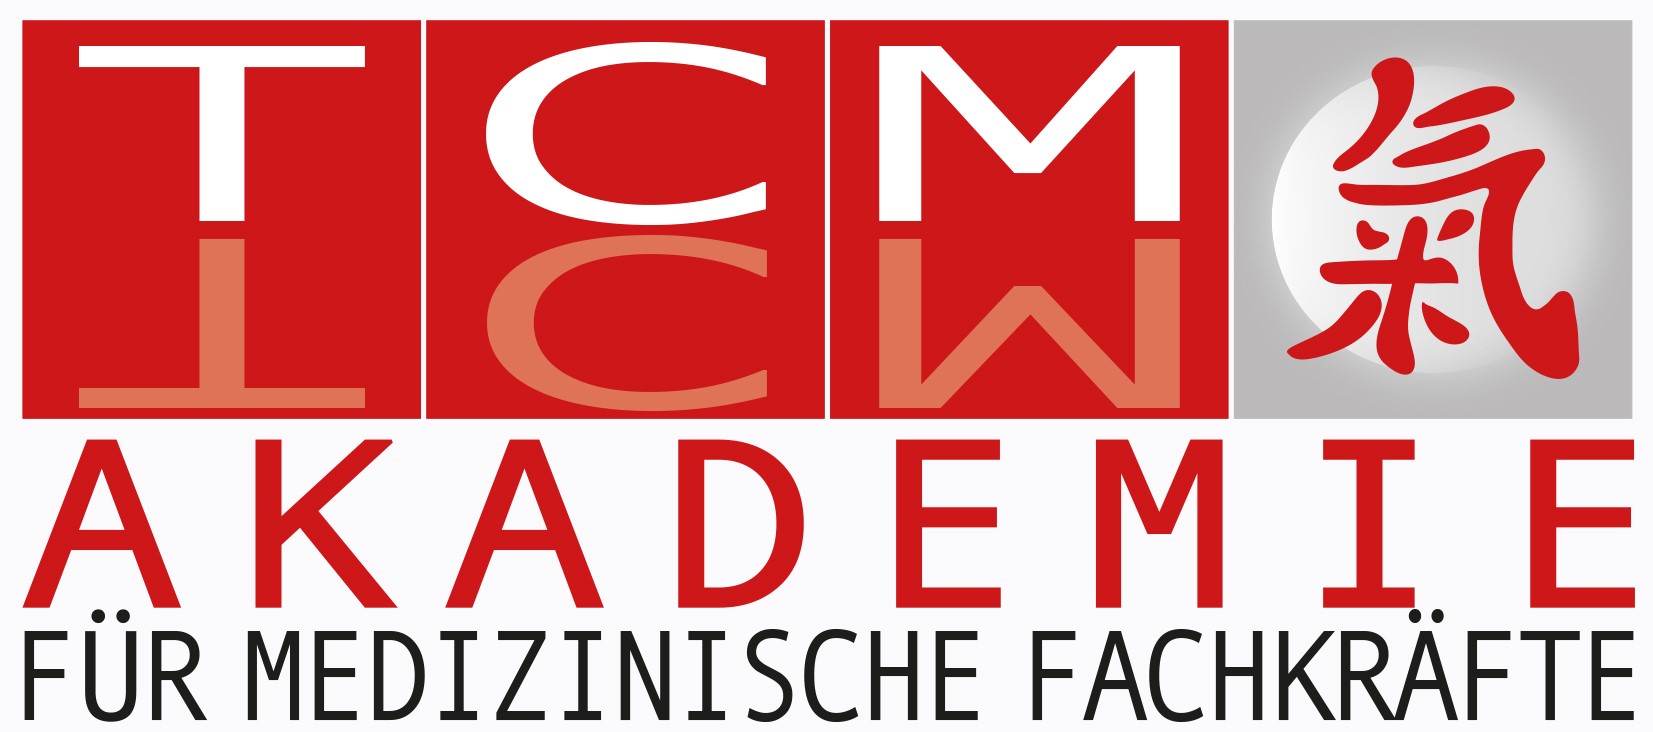 TCM-Akademie